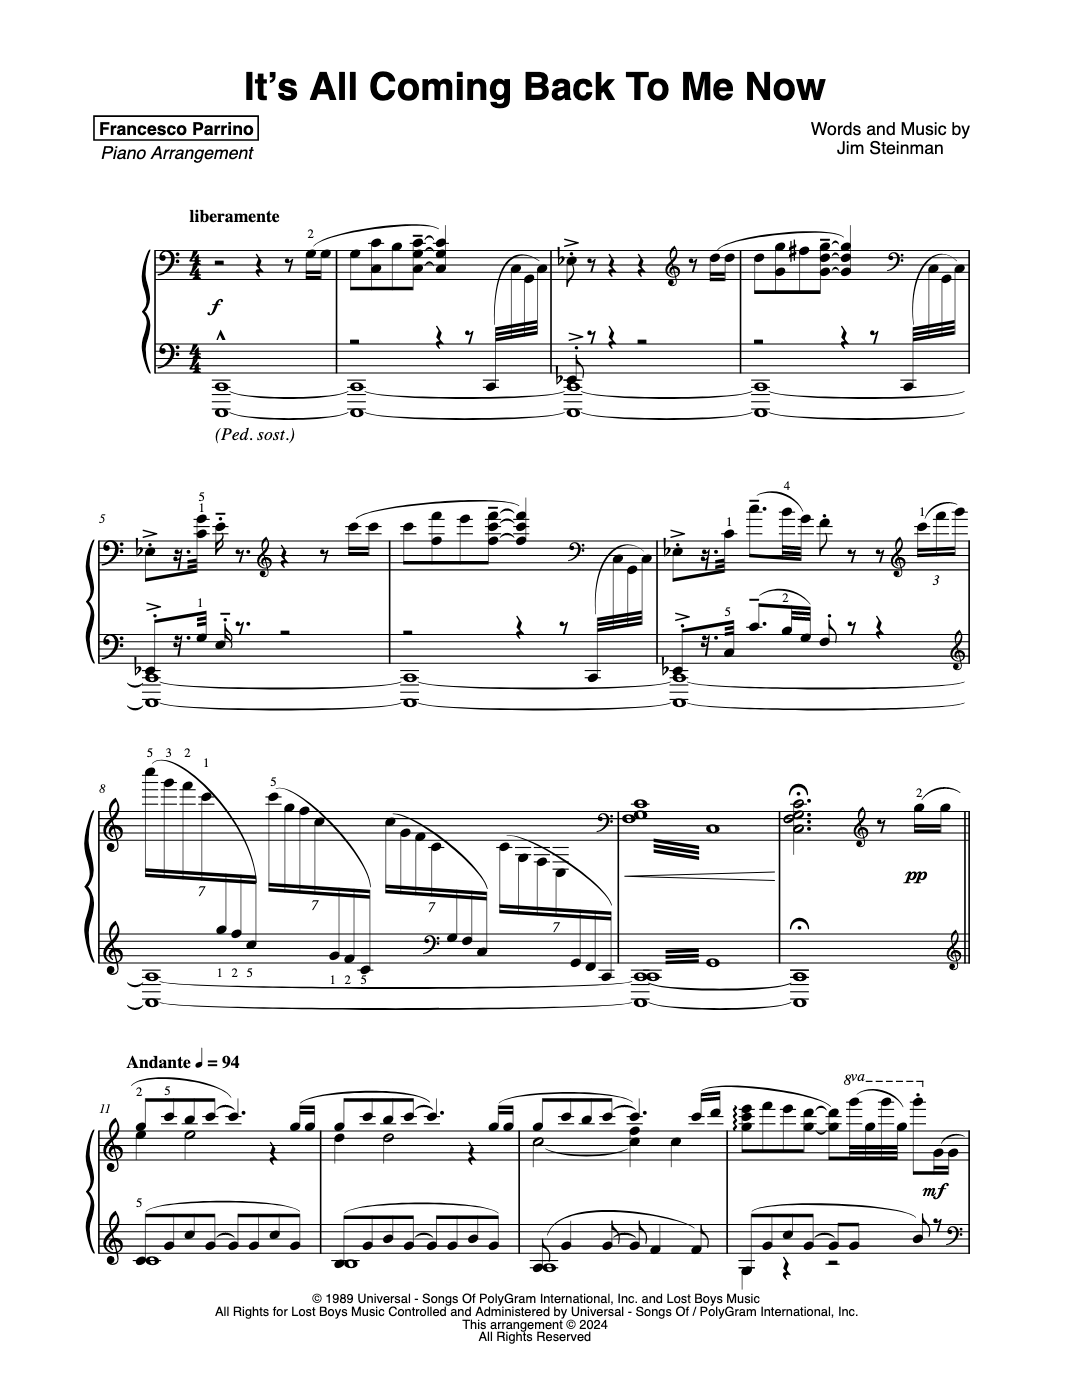 Queen - Love Of My Life - Partitura para piano, Partituras de piano, Sheet music for piano